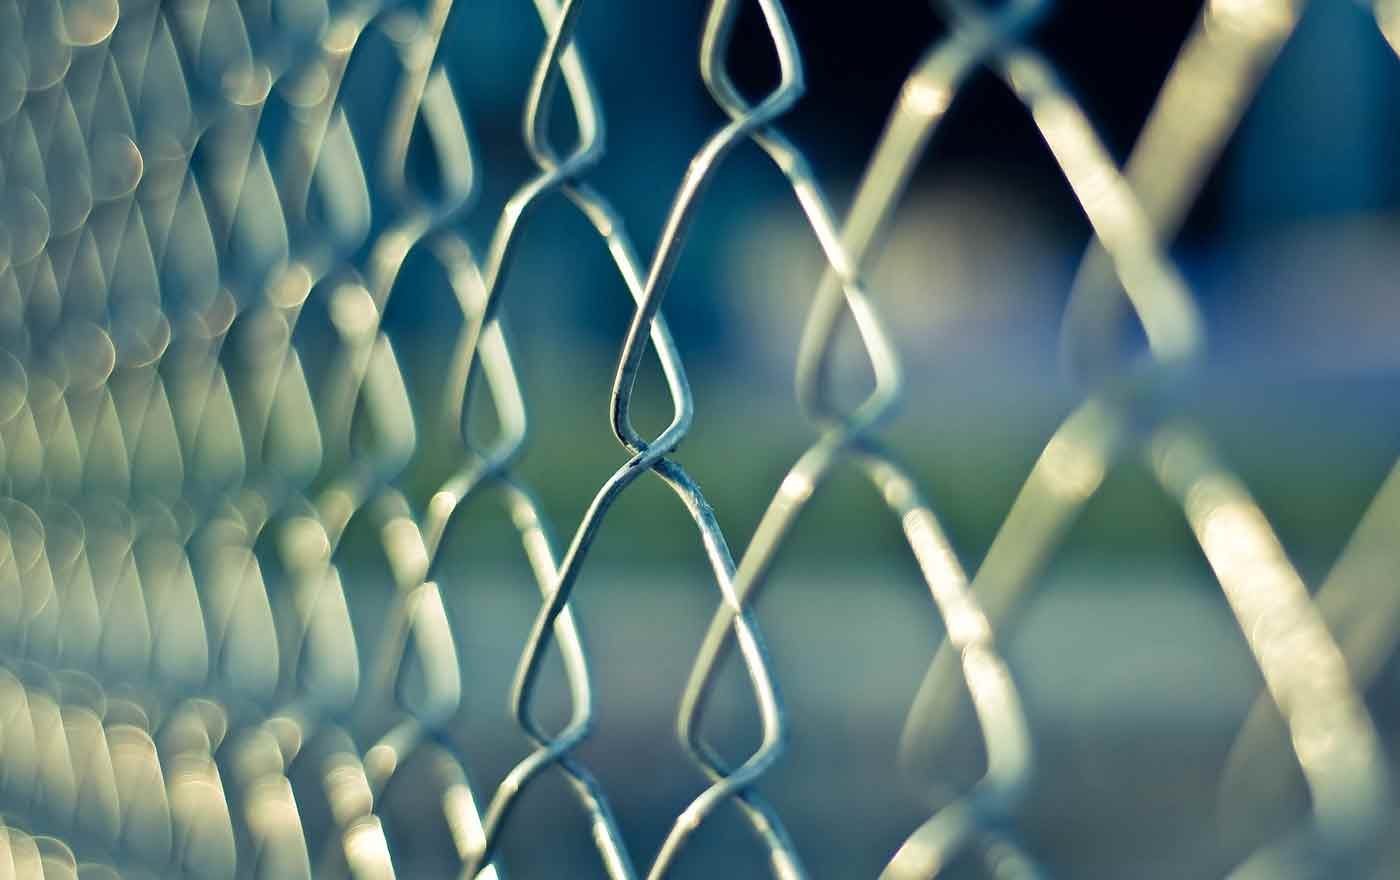 "Es heißt, die Einsamkeit sei eine Gefängniszelle, die sich nur von innen öffnen lässt. Das gelingt sicher nicht immer. Aber es lohnt sich, im Vertrauen auf Gott zu versuchen, diese Türe zu öffnen und auf andere zuzugehen." Foto: pxhere